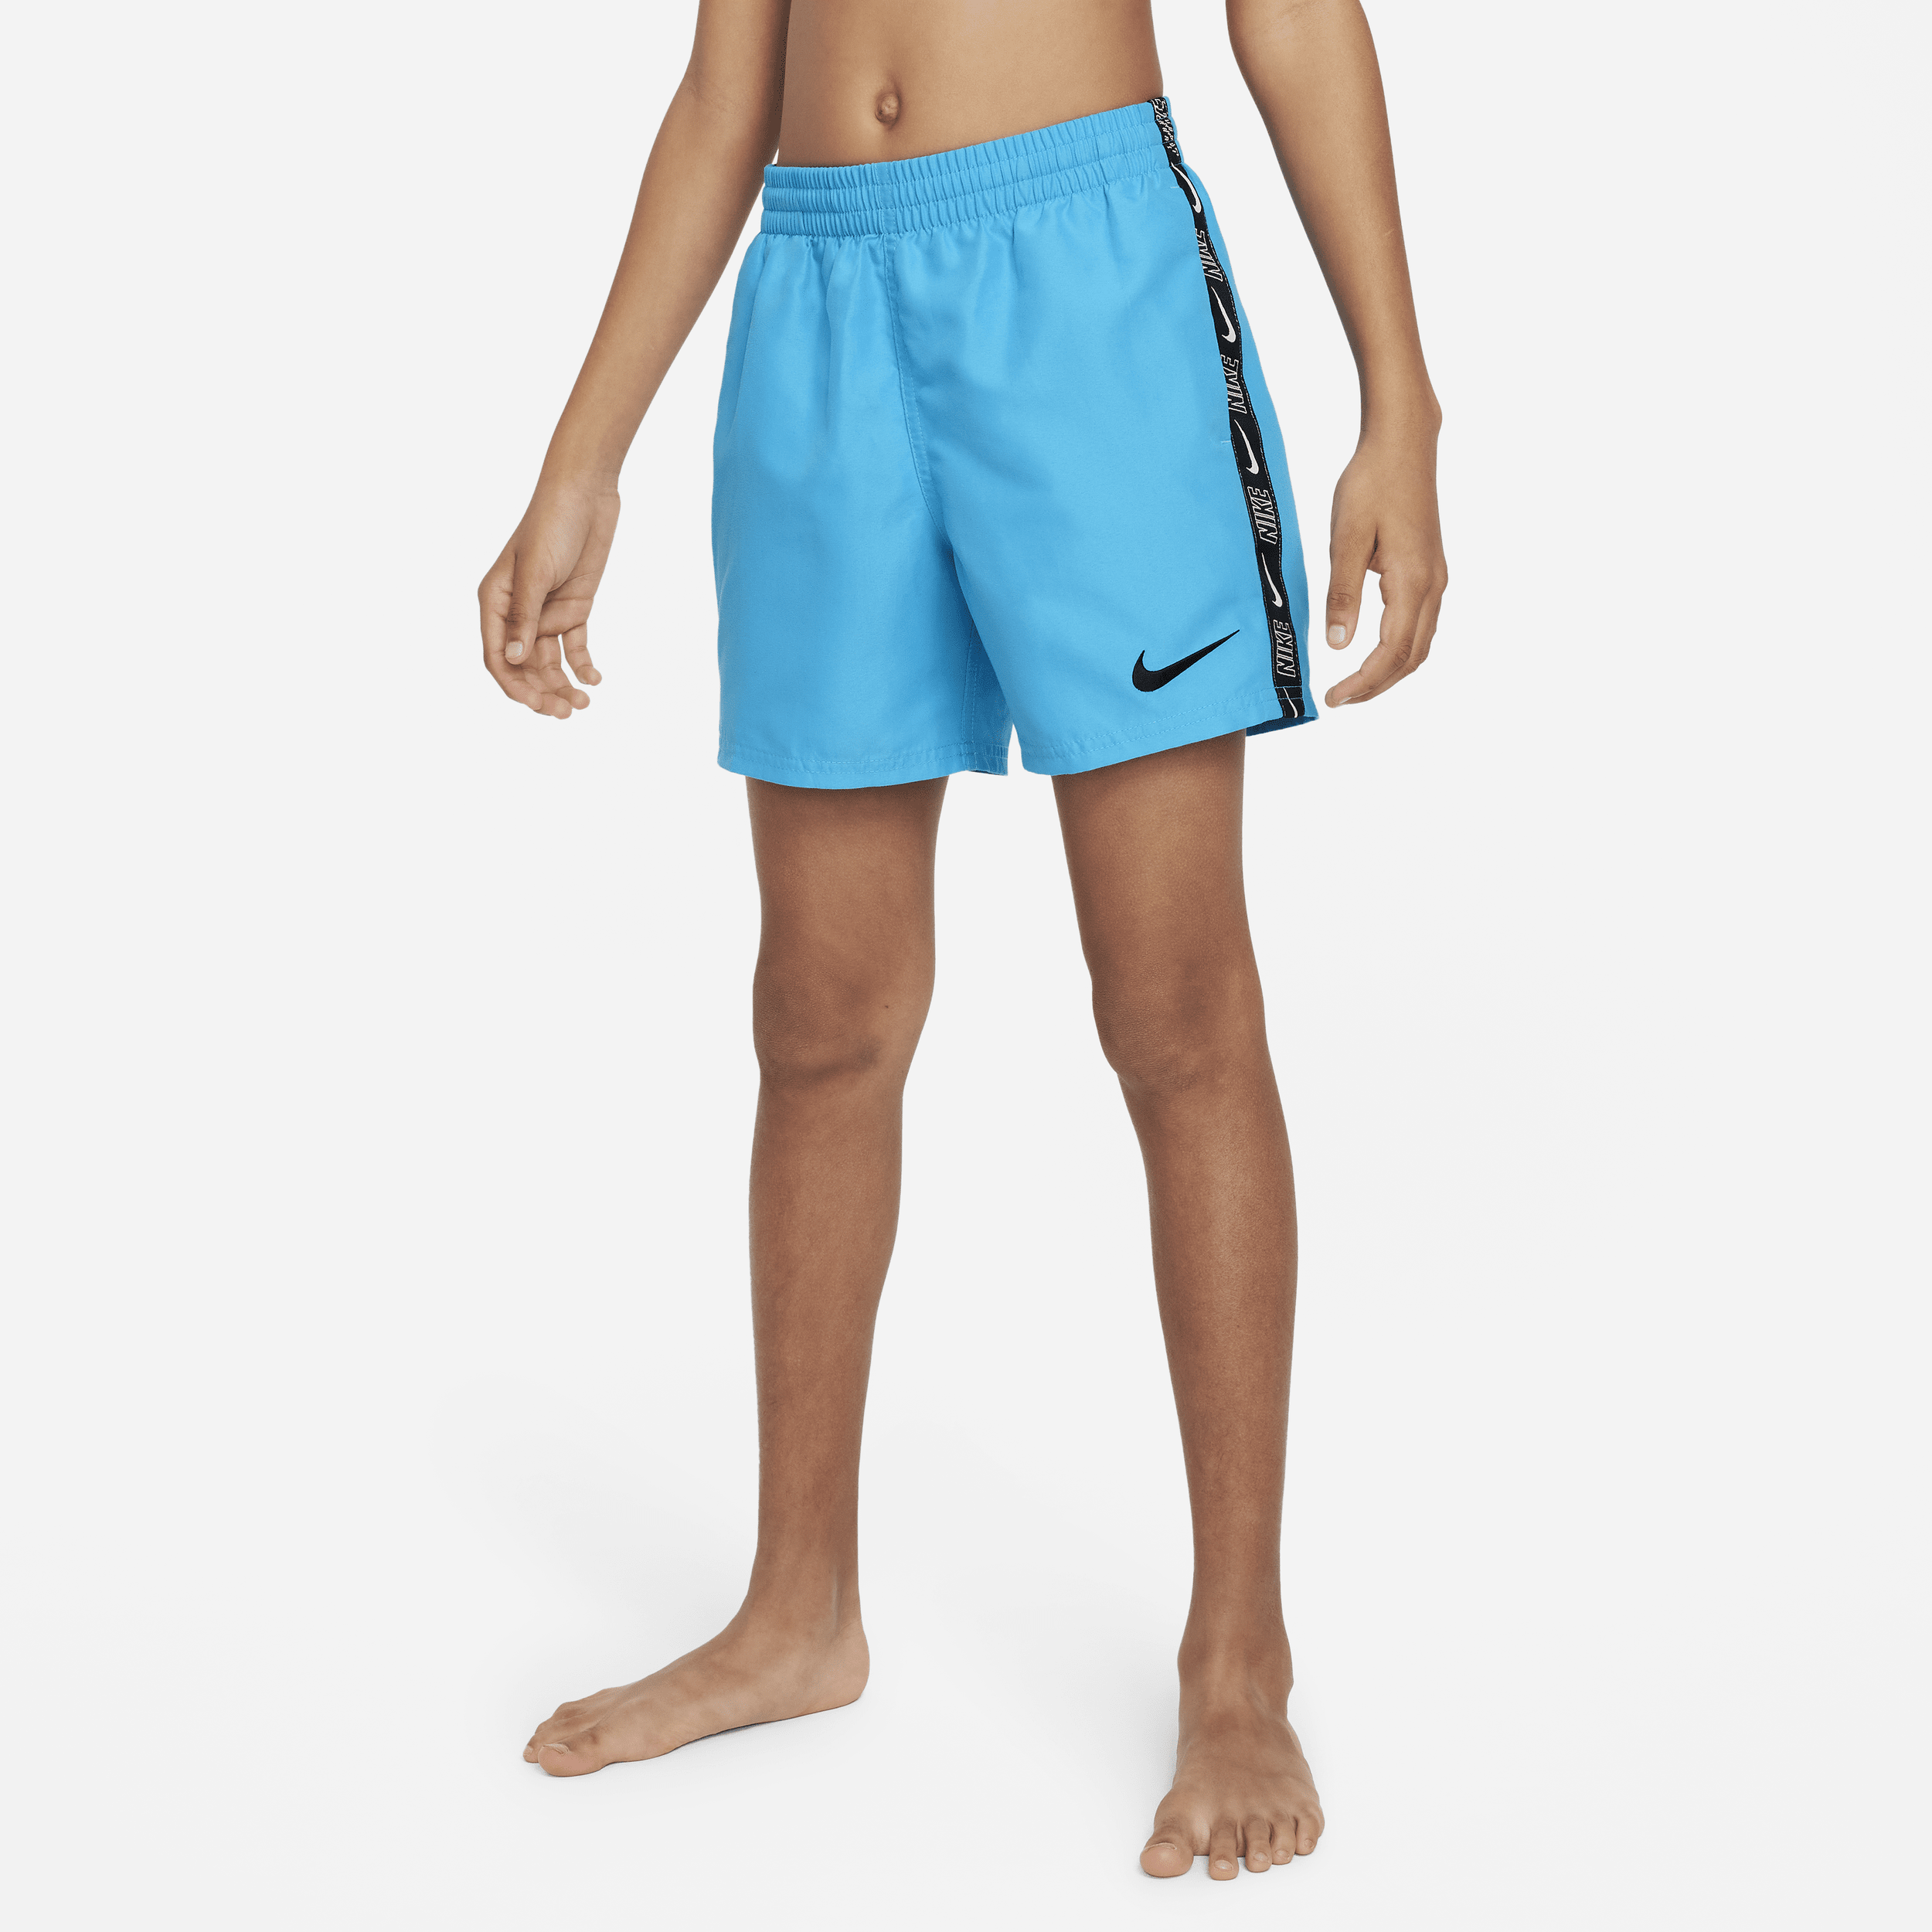 Nike-Volley-badeshorts (10 cm) til større børn (drenge) - blå